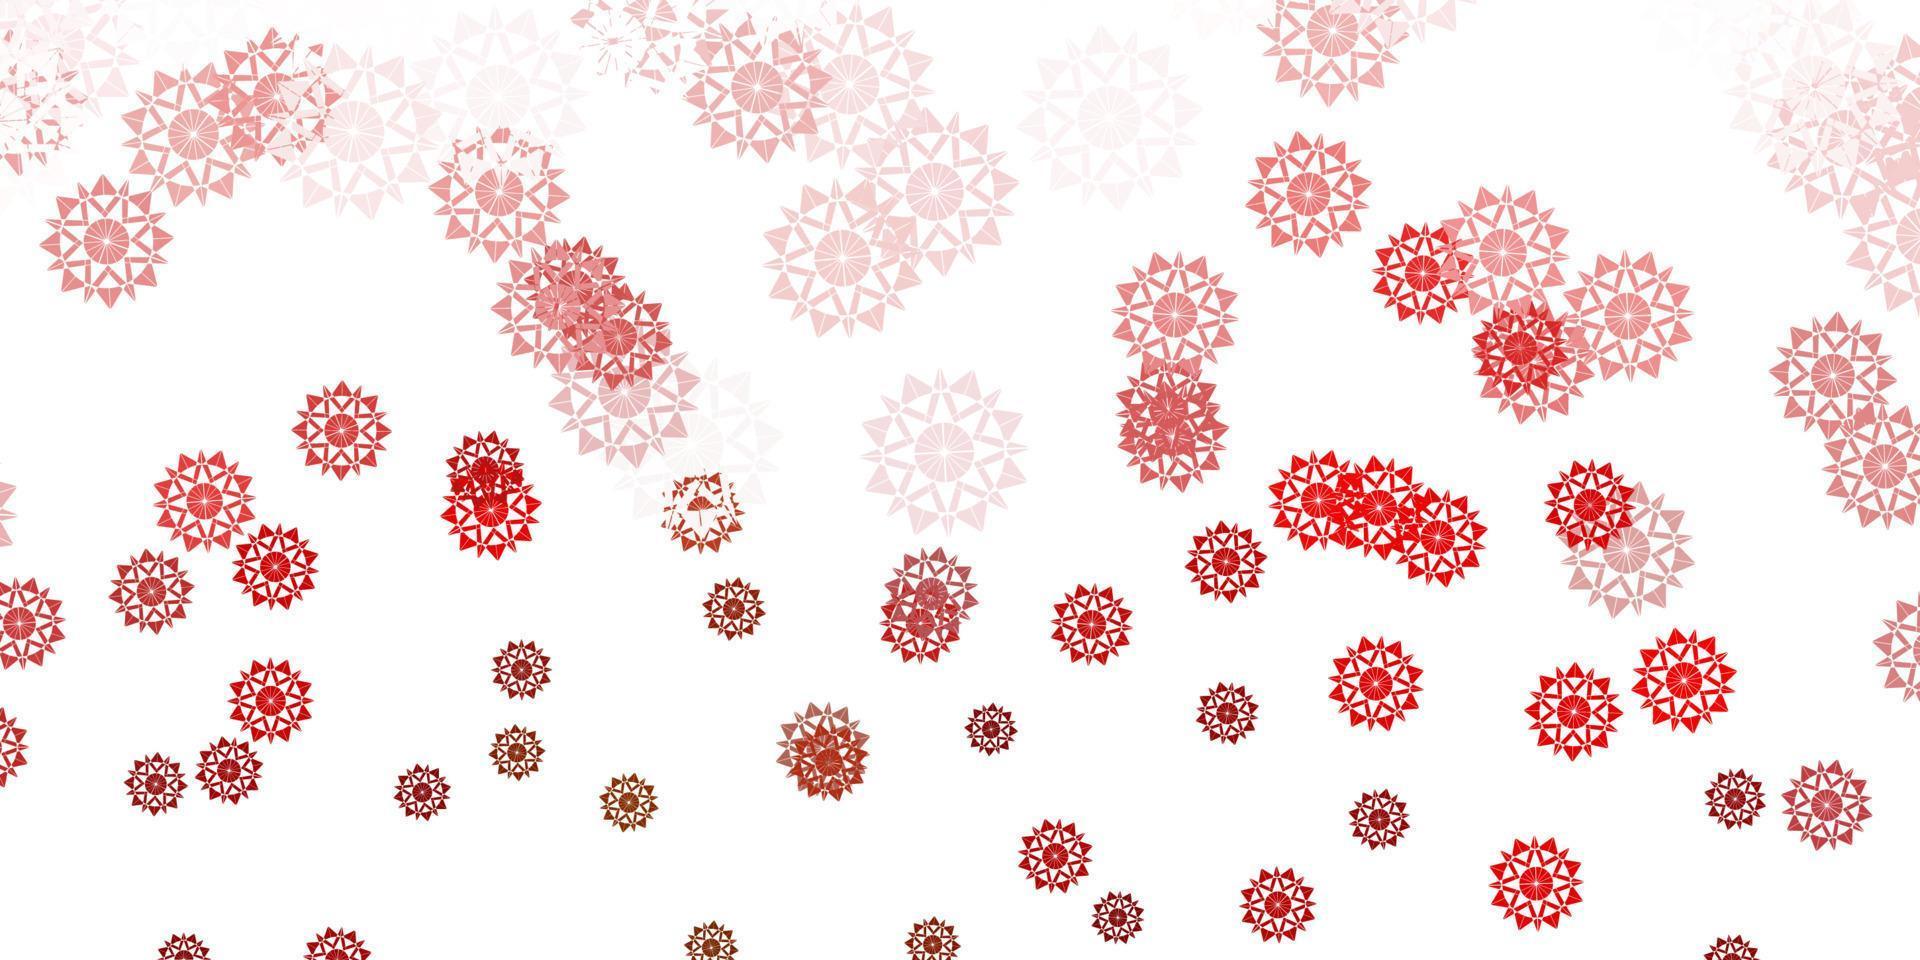 lichtgroen, rood vectorpatroon met gekleurde sneeuwvlokken. vector